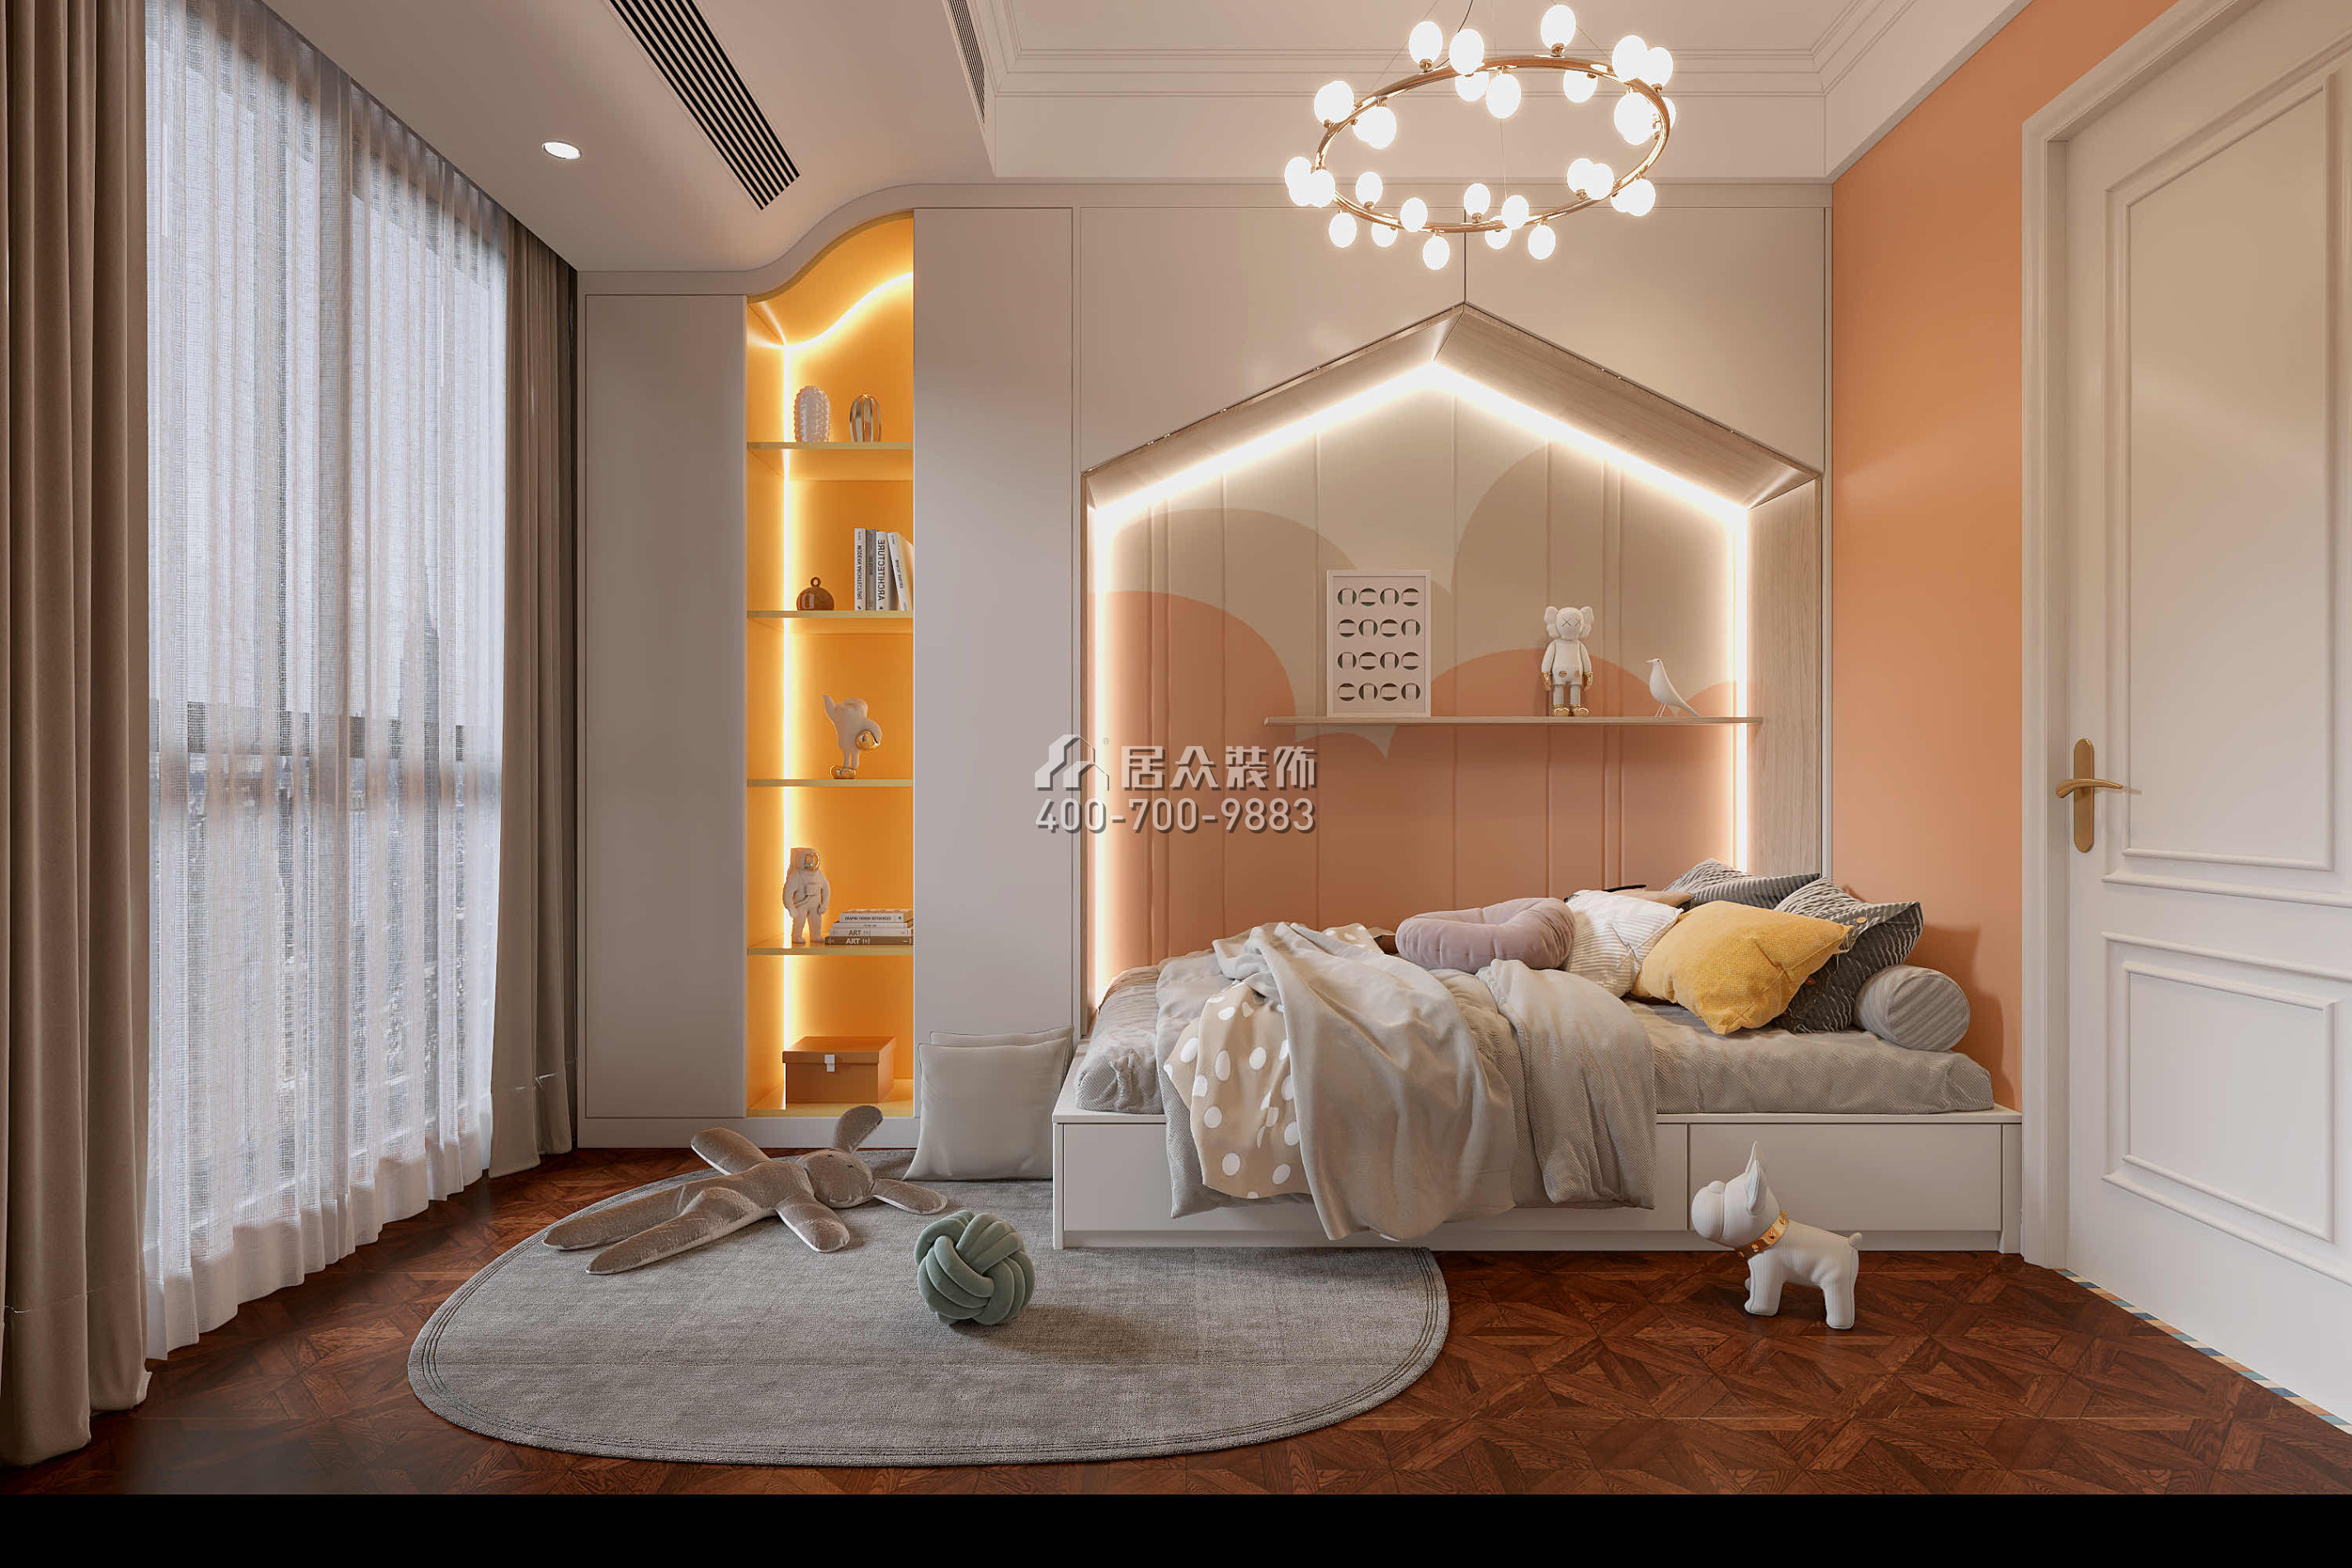 天健天驕南苑160平方米美式風格平層戶型臥室裝修效果圖